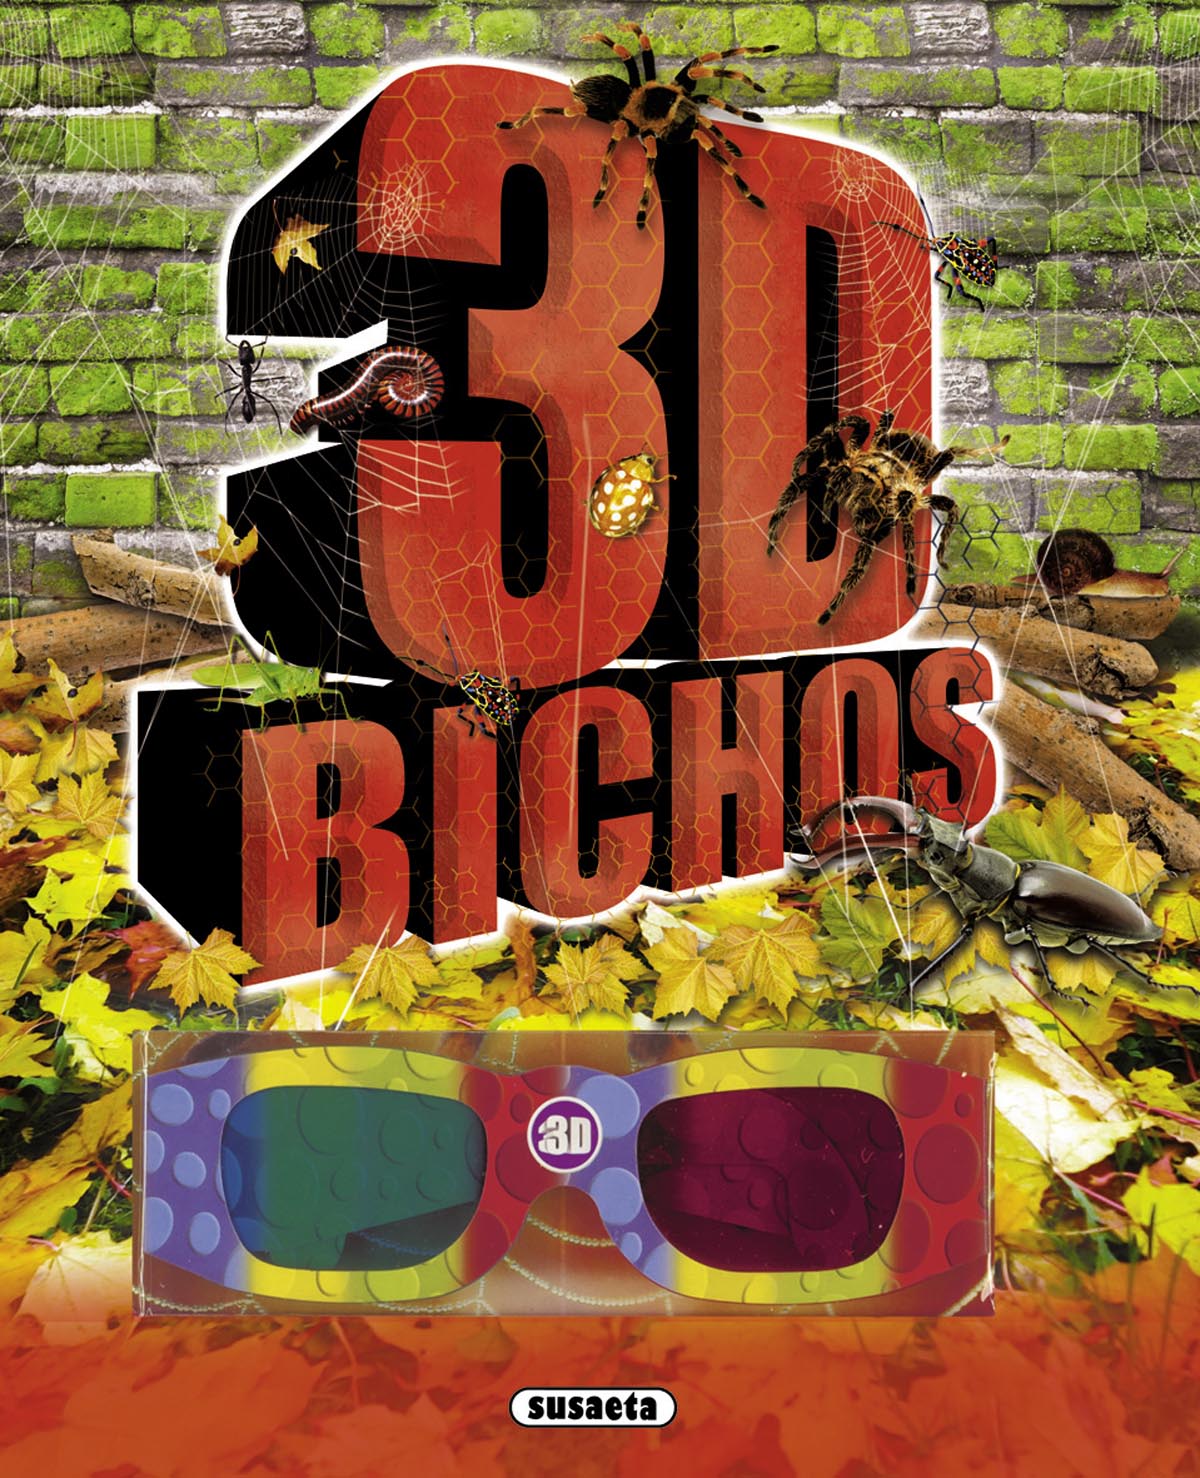 BICHOS 3D